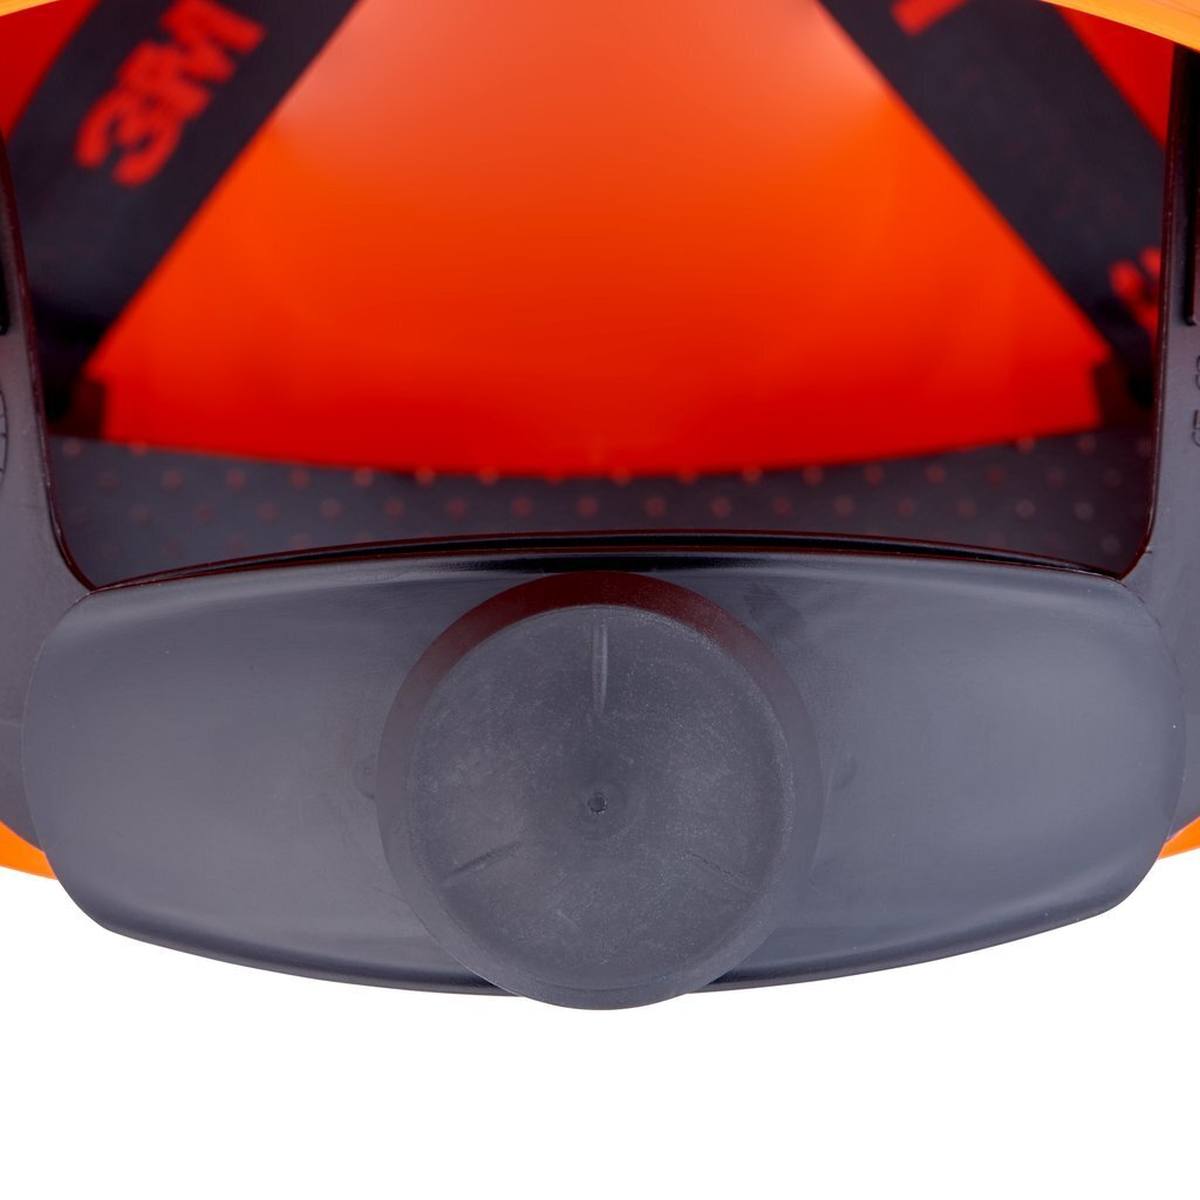 3M Casco de seguridad G3000 con indicador UV, naranja, ABS, cierre de trinquete ventilado, banda de sudor de plástico, pegatina reflectante